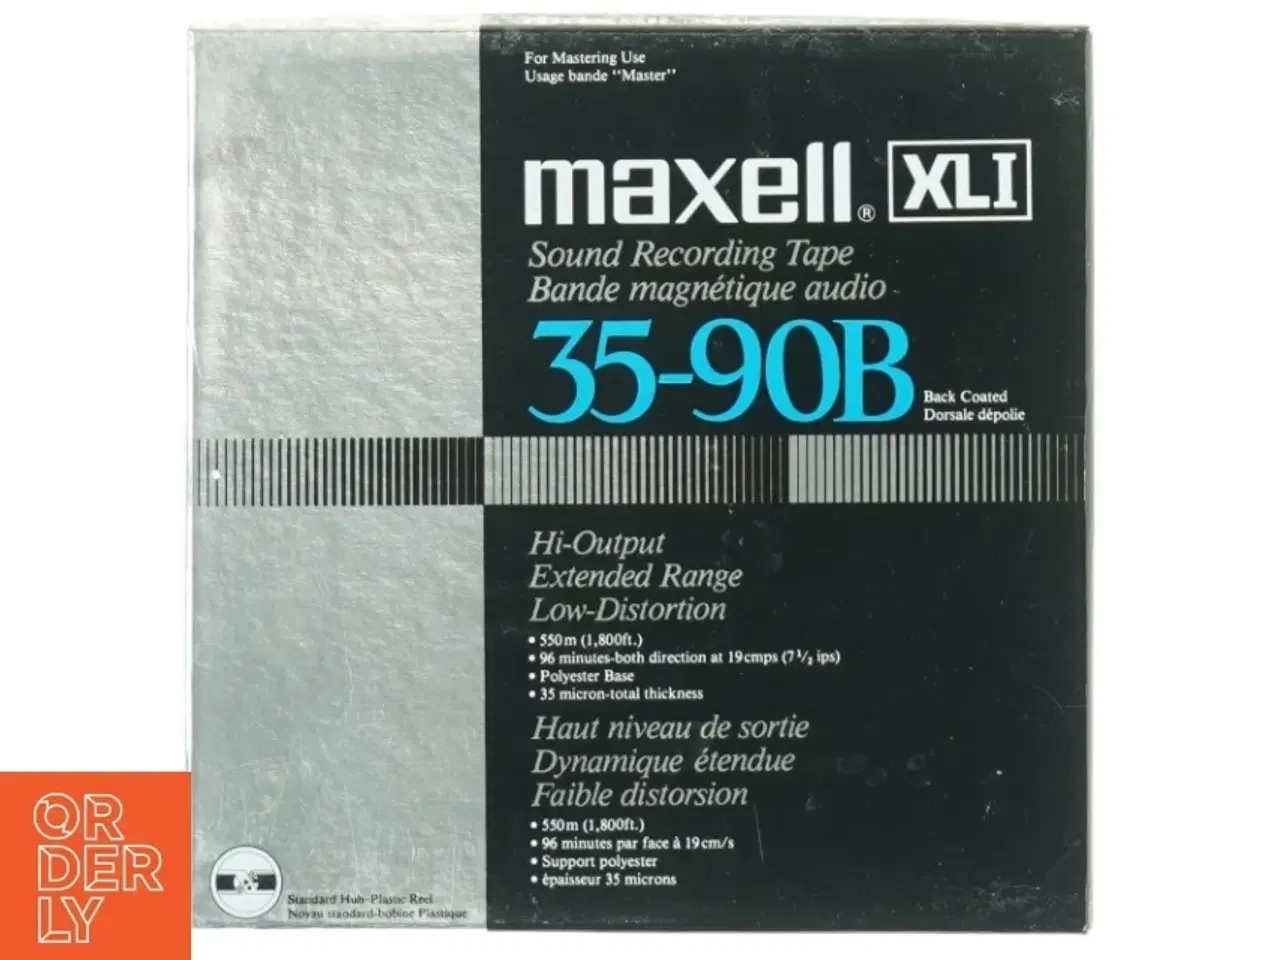 Billede 1 - Maxell XLI 35-90B audio tape fra Maxell (str. 18 x 18 cm)